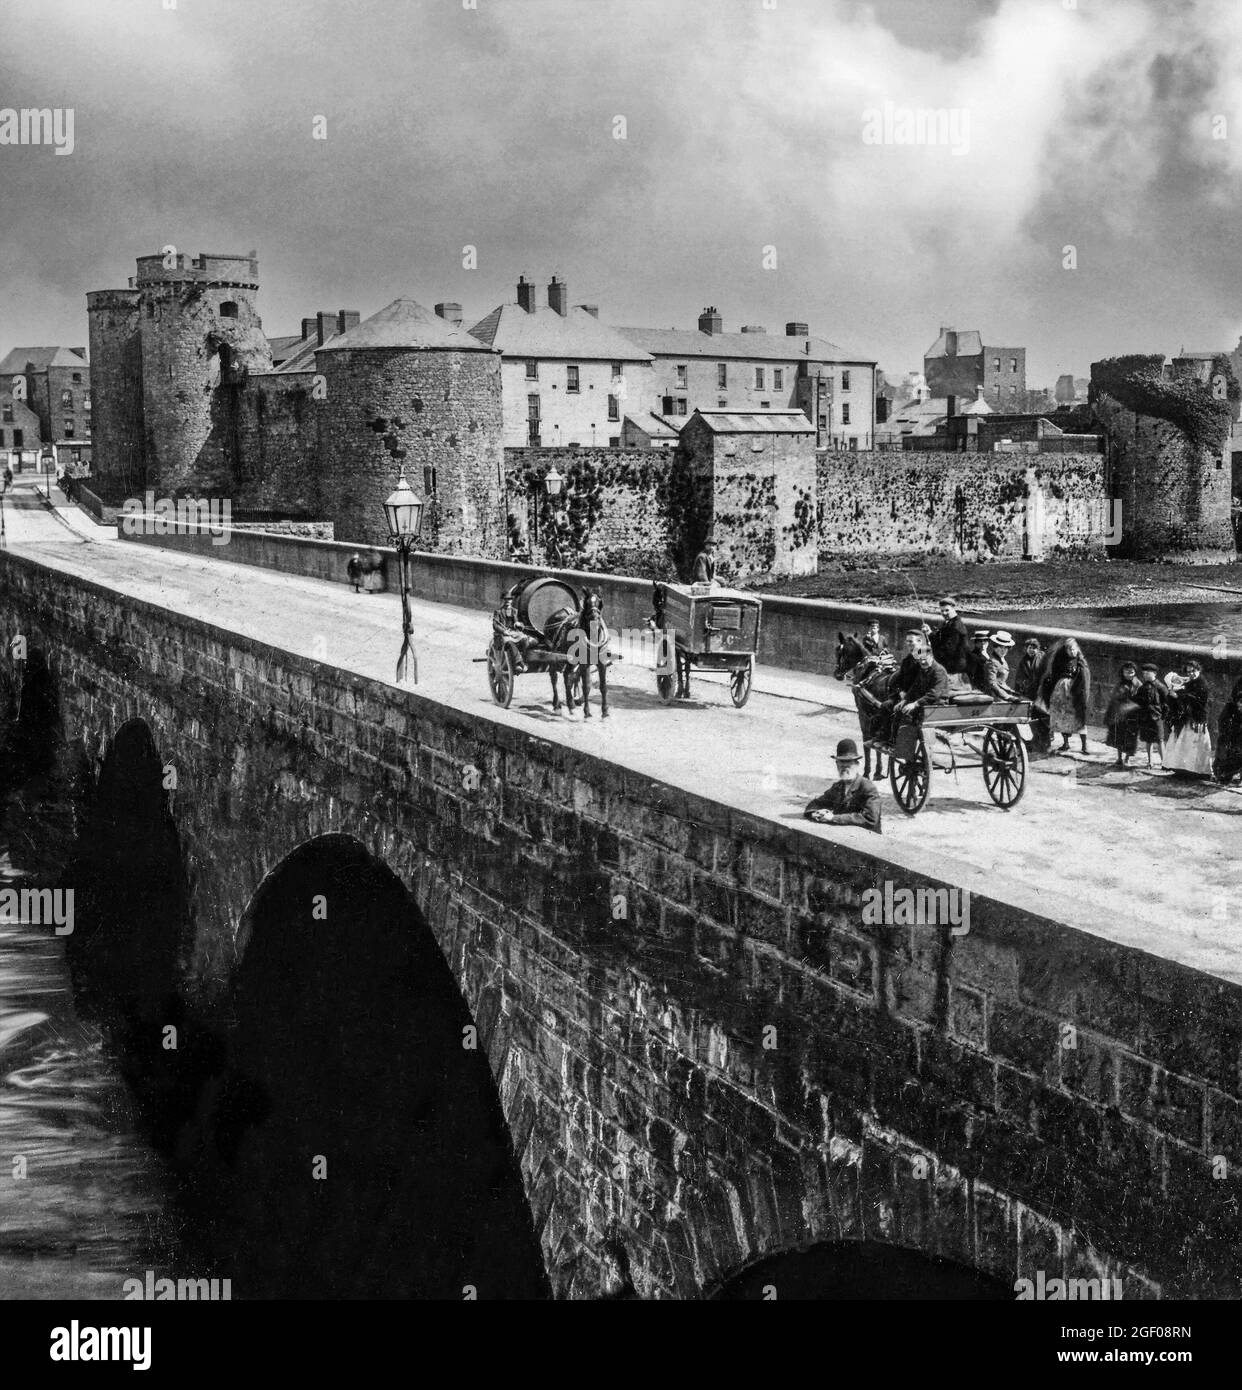 Eine Ansicht von Pferdefahrzeugen und Menschen aus dem frühen 20. Jahrhundert auf der Thormond Bridge über dem Fluss Shannon, die vom König John's Castle aus dem 13. Jahrhundert, Stadt Limerick, Irland, überragt wird Stockfoto